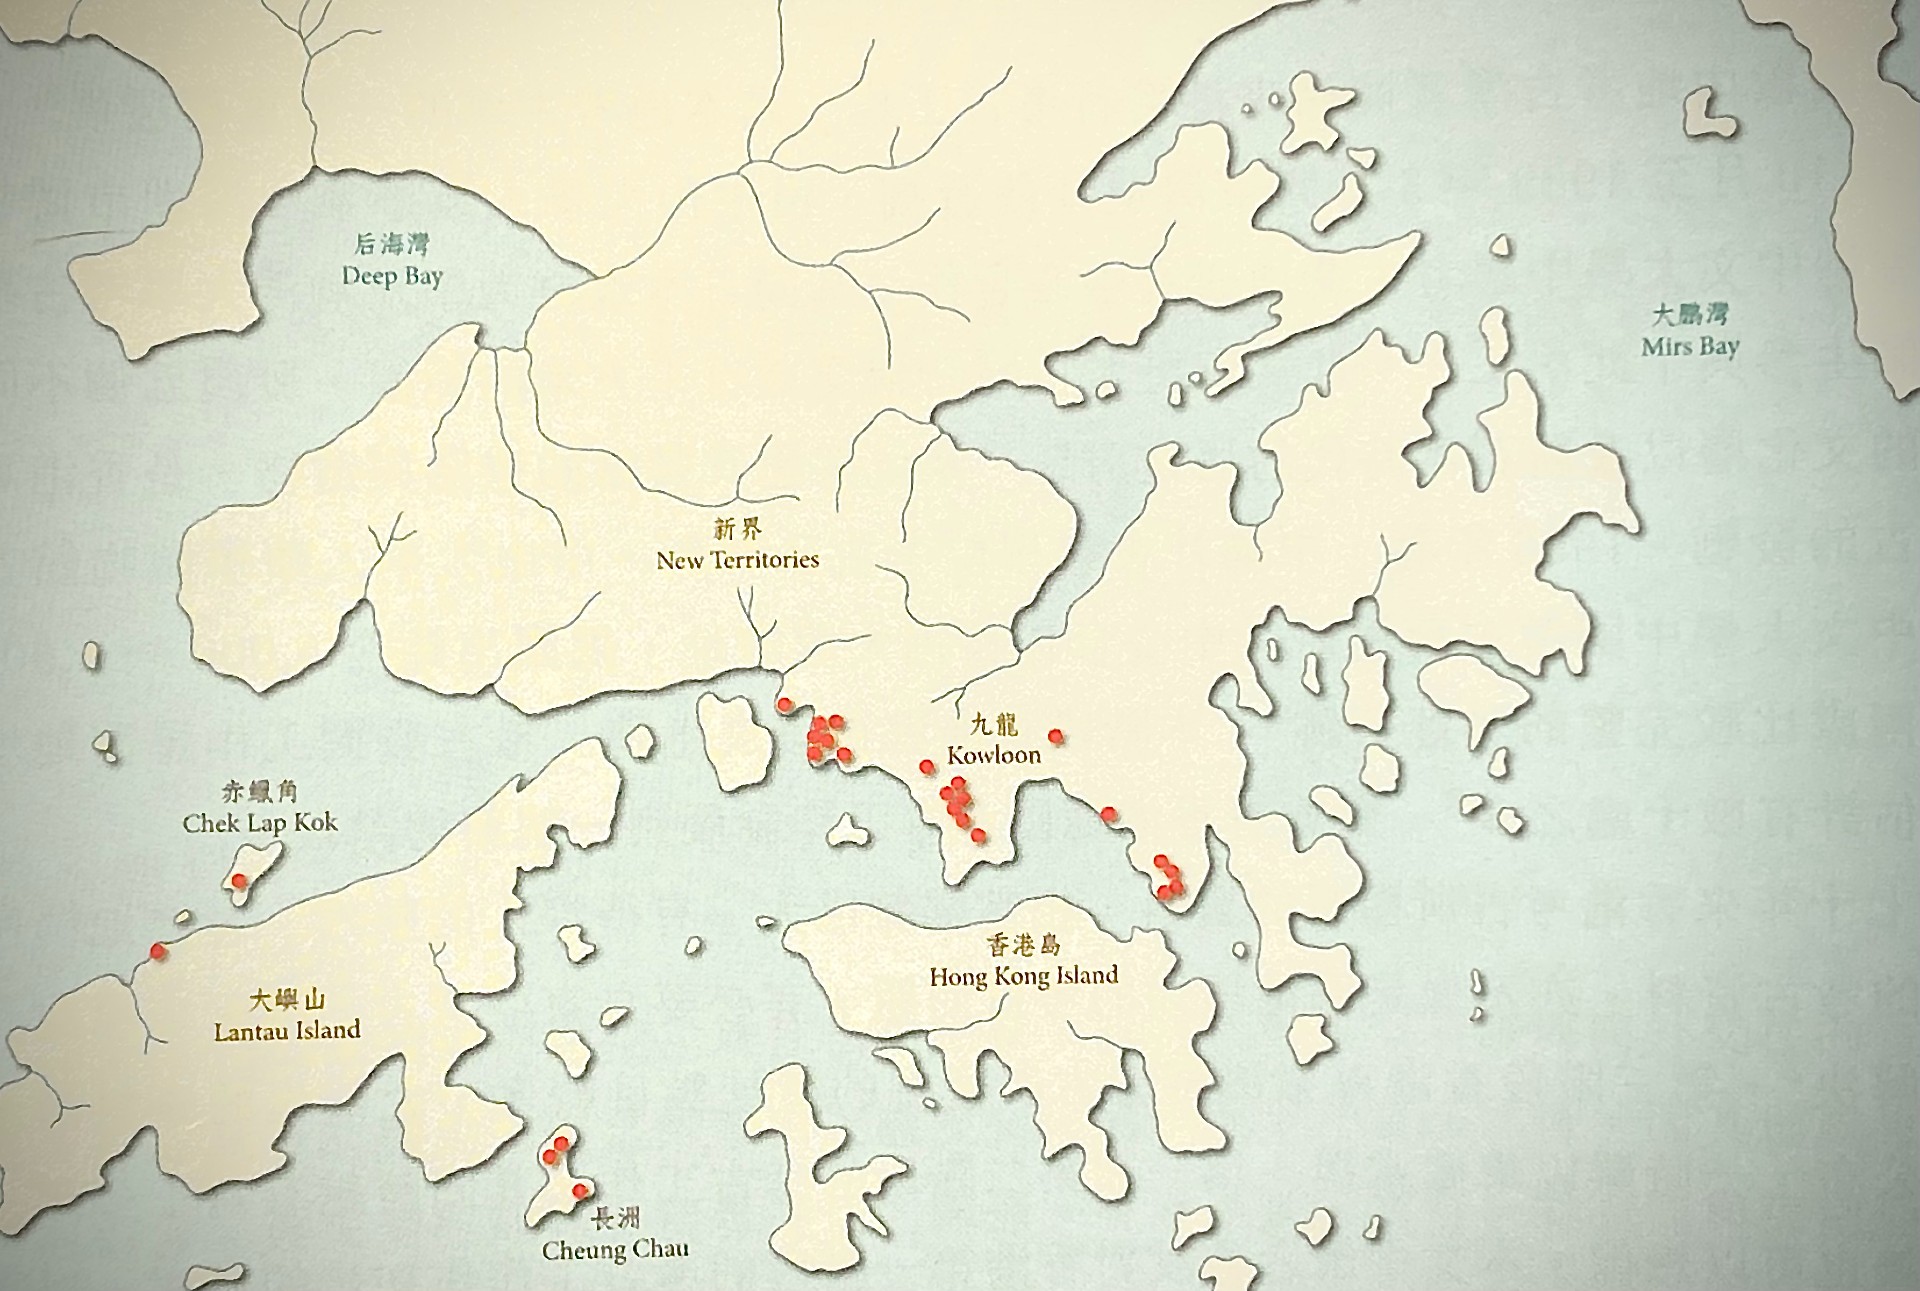 1928年九龍灣史前考古文物的發現地點。（圖片由作者提供）